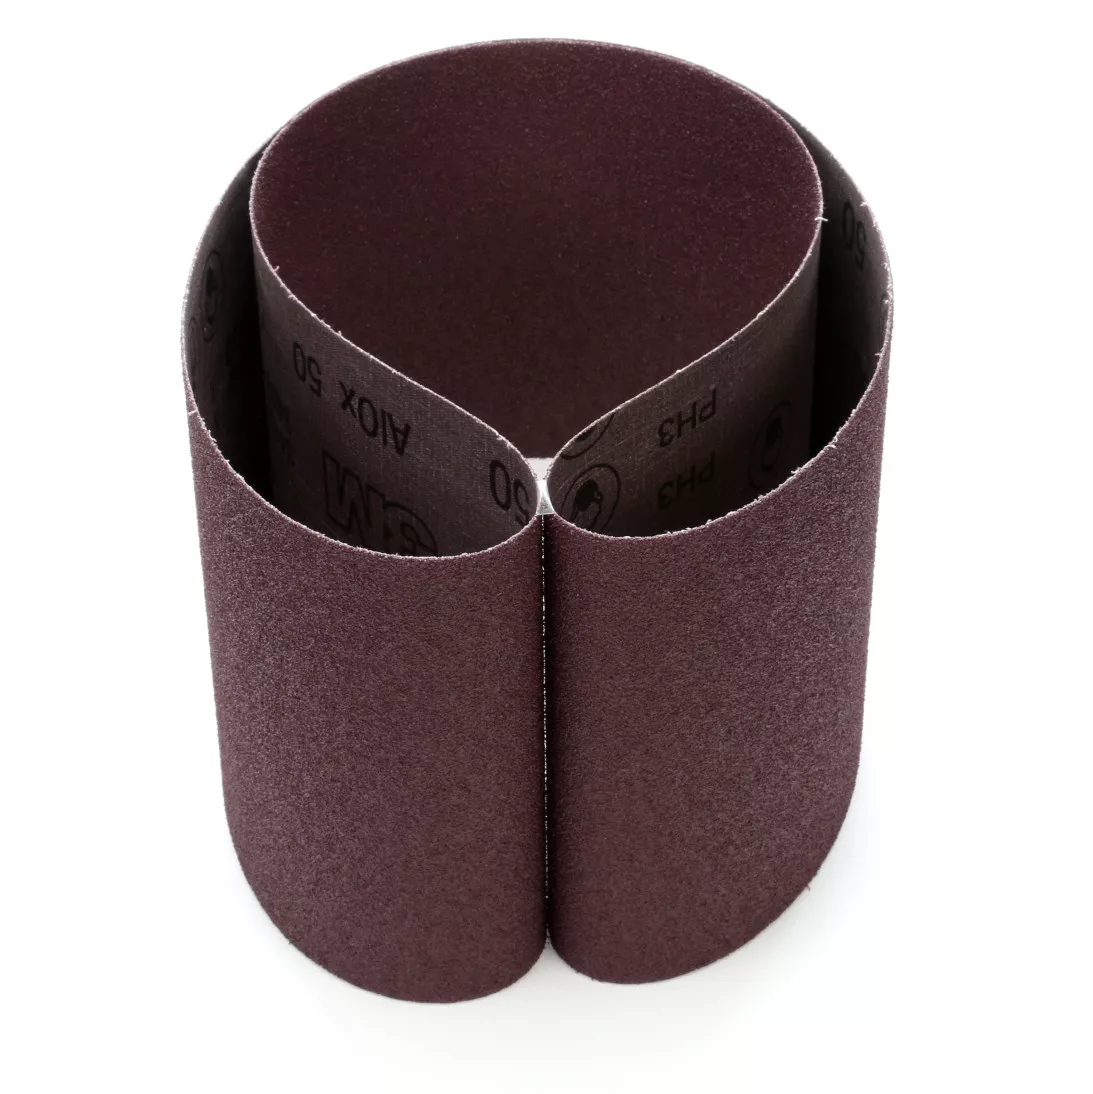 3M™ Cloth Belt 341D, 50 X-weight, 6 in x 48 in, Film-lok, Single-flex,
10 per inner, 20 per case